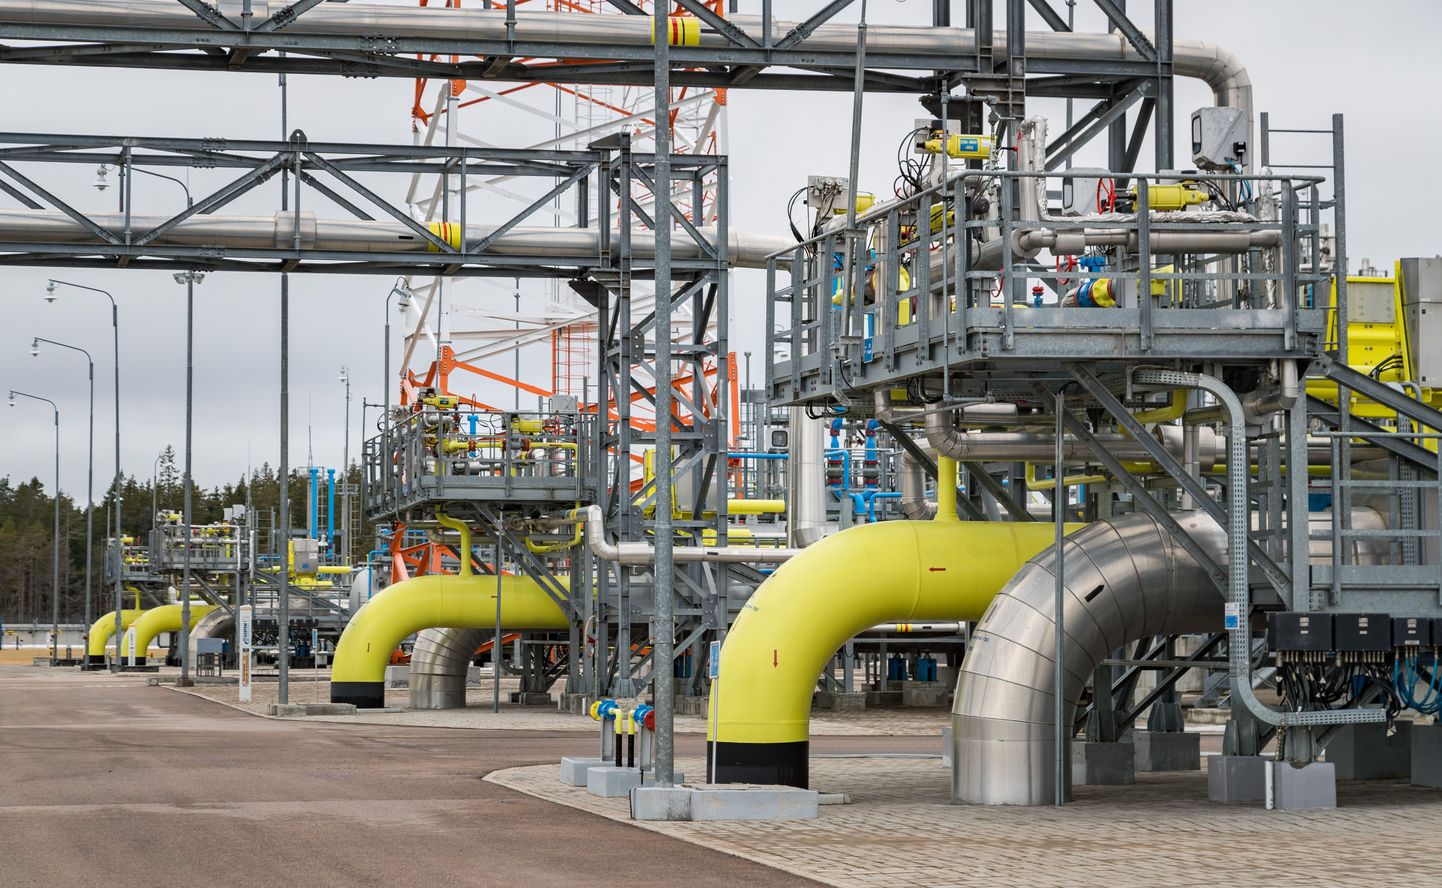 Esimese Nord Streami gaasijuhtme kompressorjaam Venemaal Portovaja lahe ääres. Sama tehnoloogia on plaanitud ka Nord Stream 2-le, kuid Ust-Luga sadamasse.